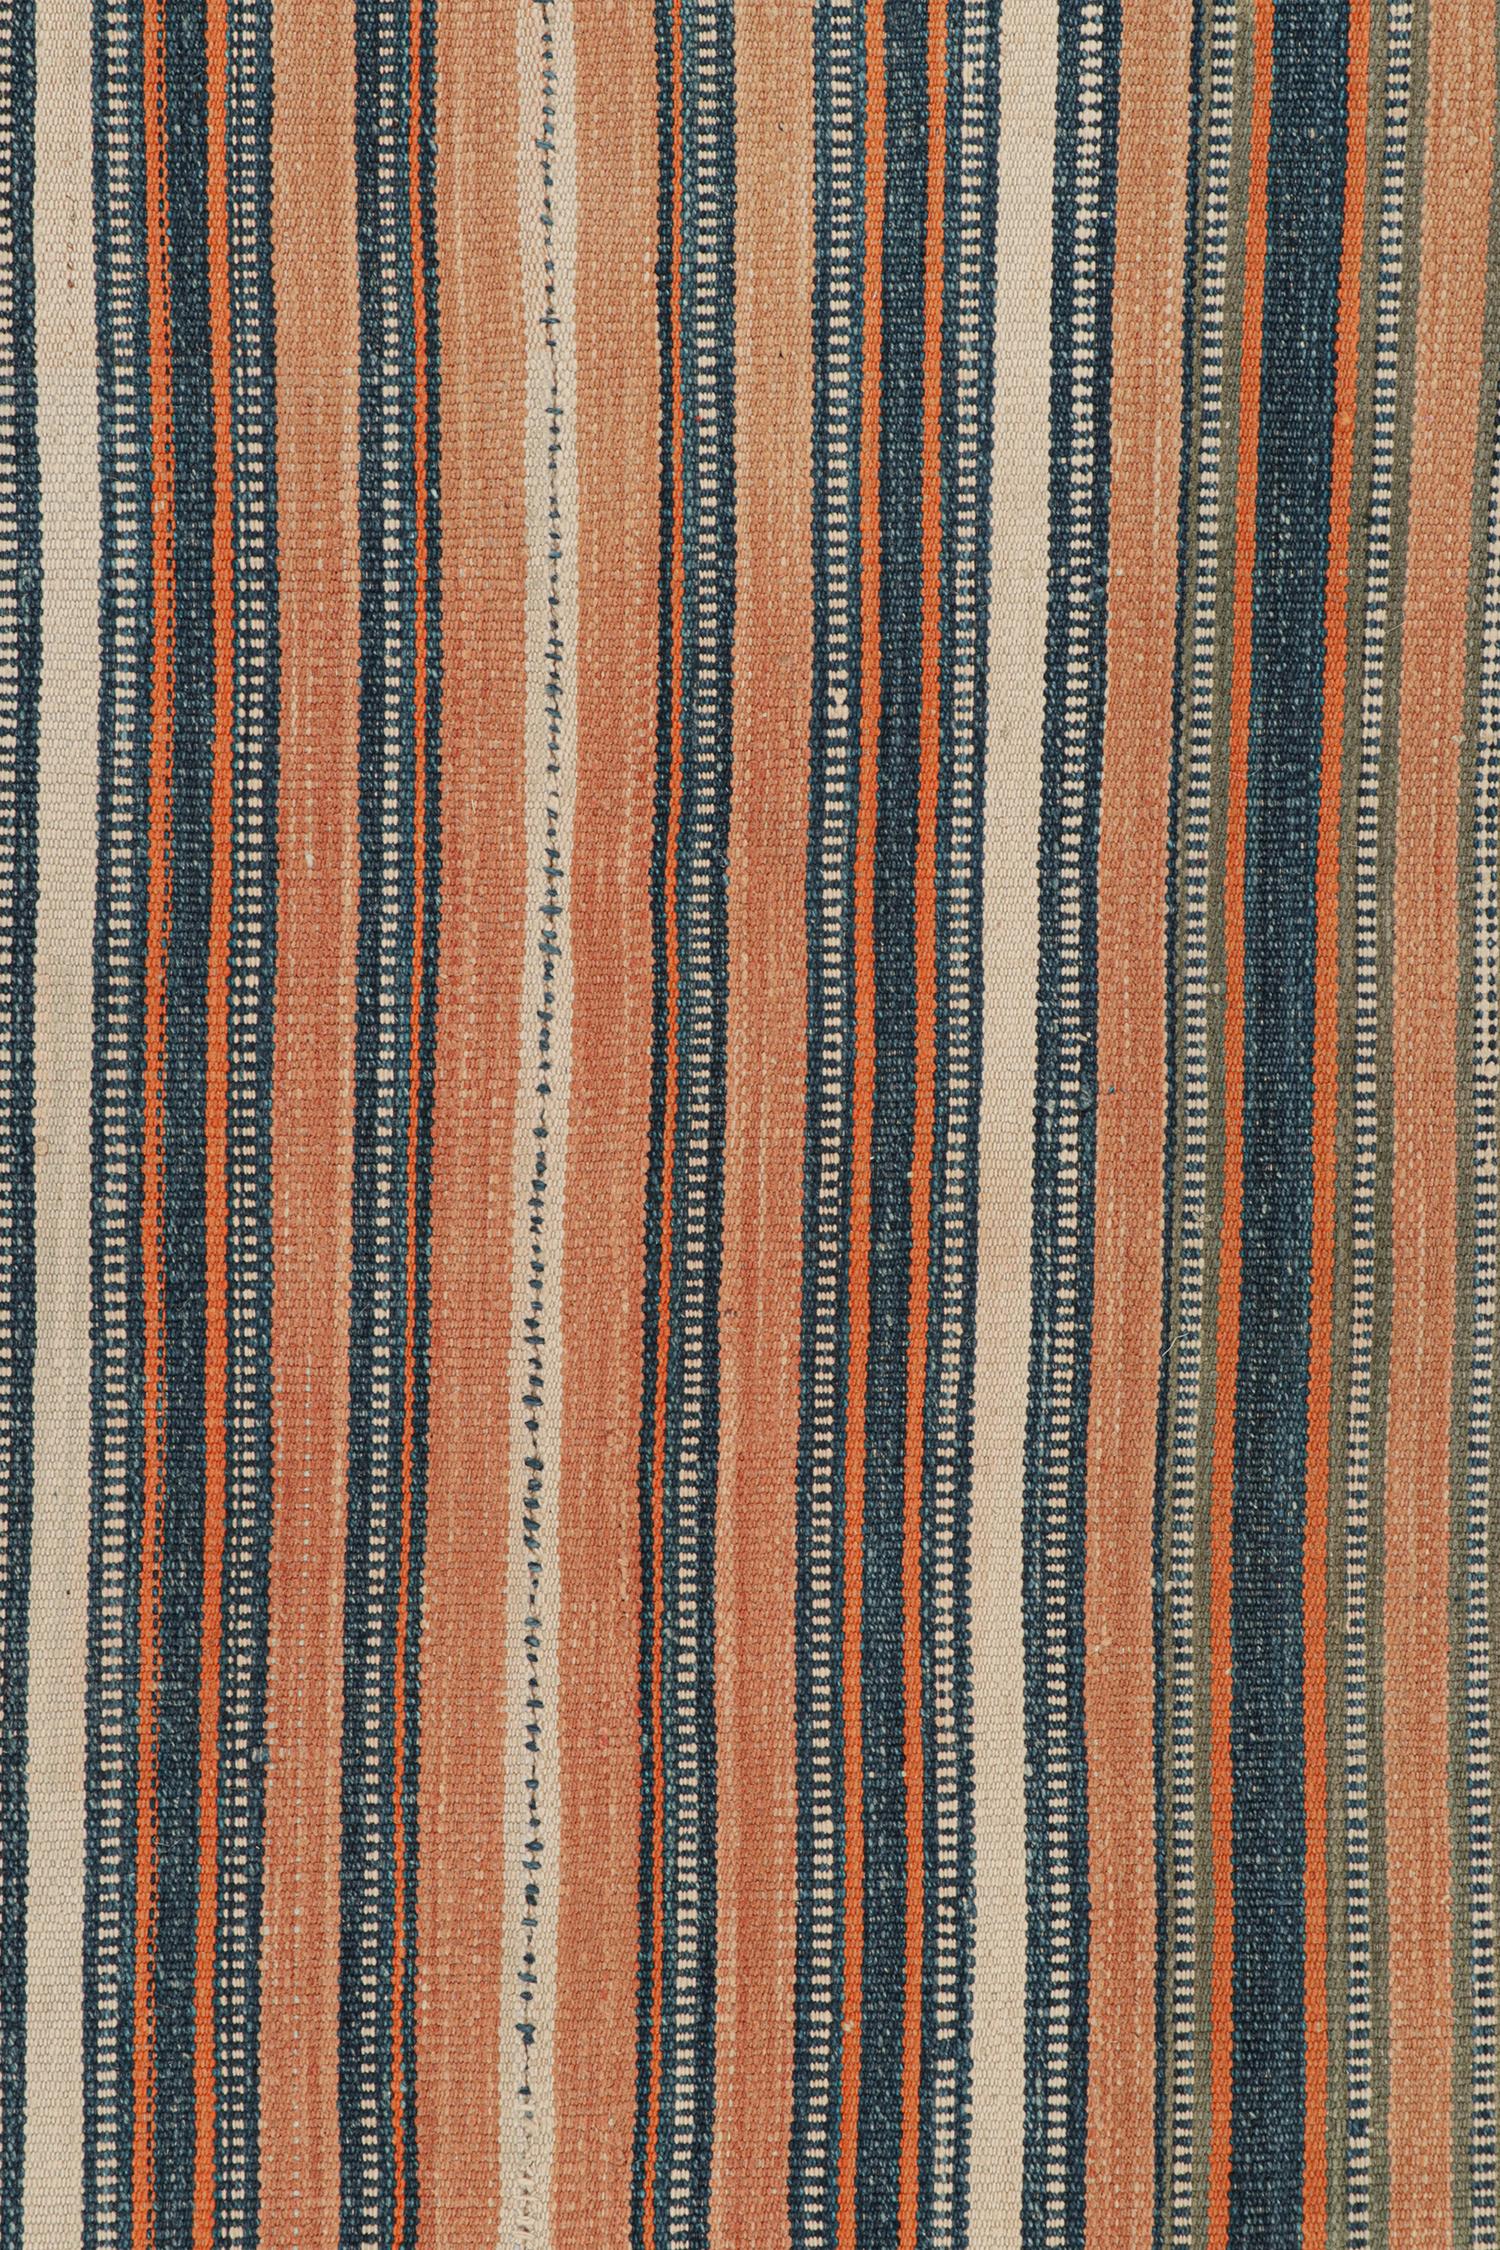 Mid-20th Century Vintage Jajim Qashqai Persian Kilim with Blue & Peach Stripes by Rug & Kilim For Sale